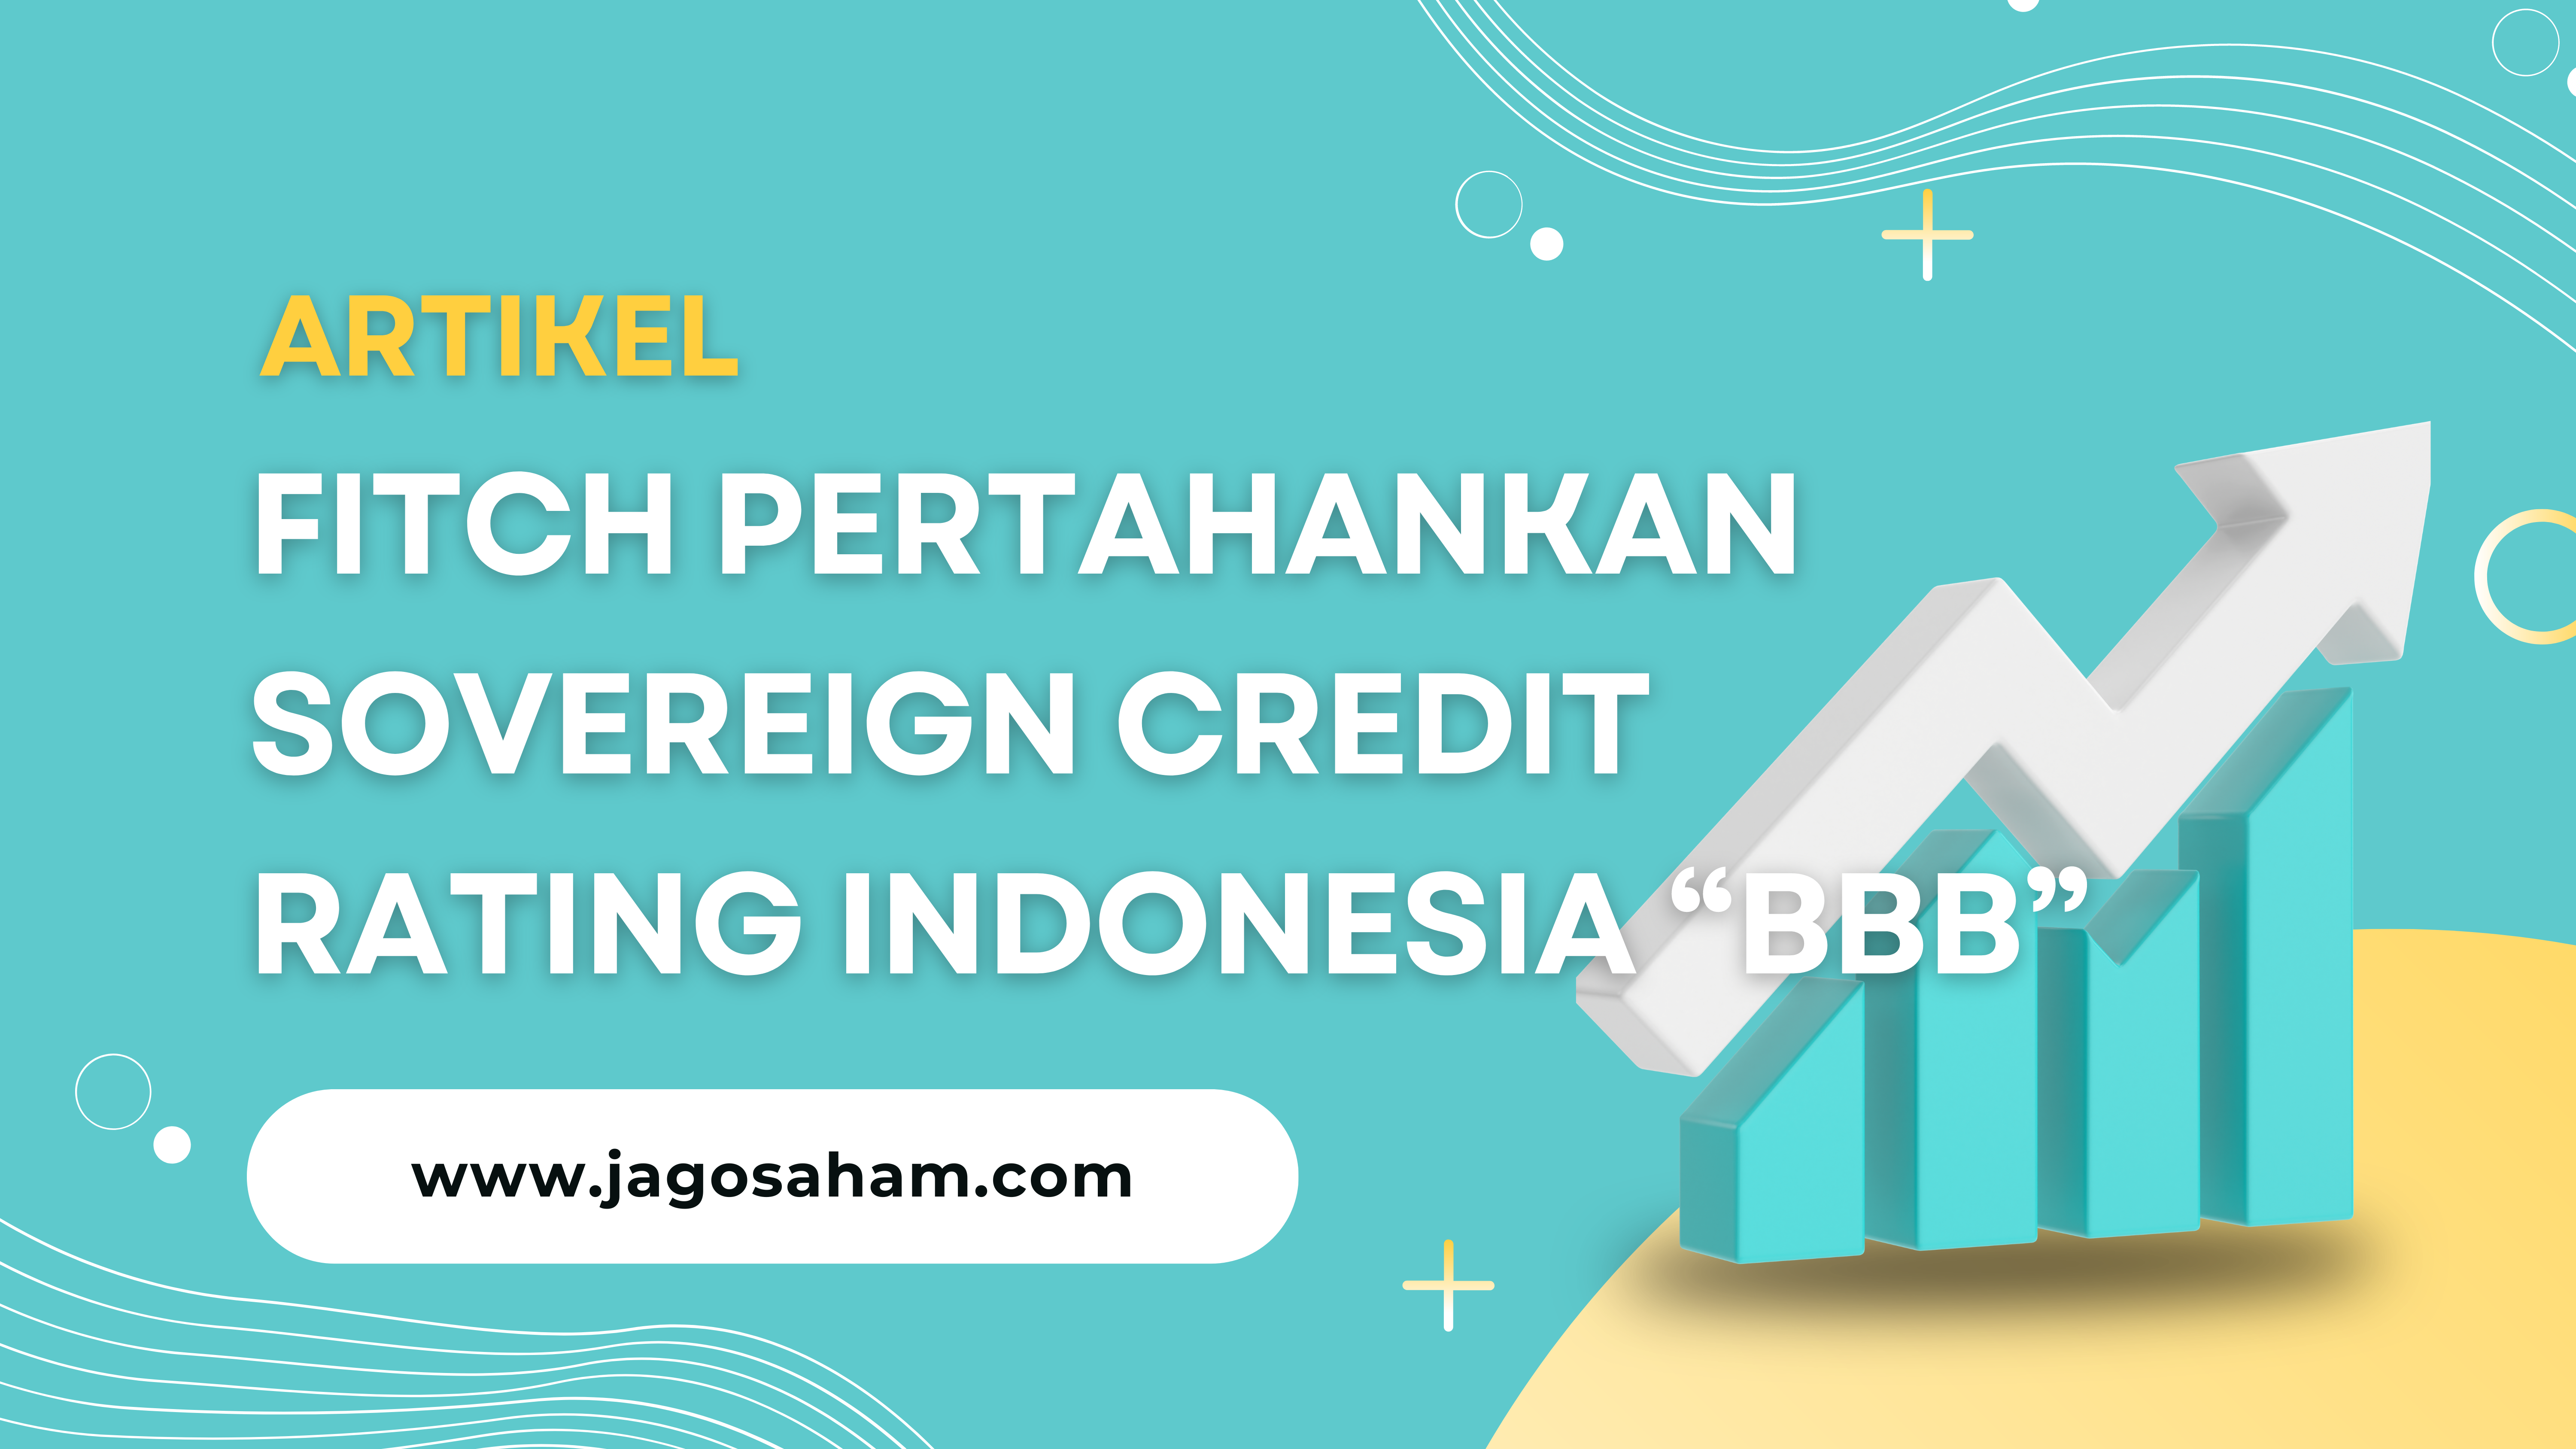 Fitch Pertahankan Sovereign Credit Rating Indonesia pada BBB dengan Outlook Stabil